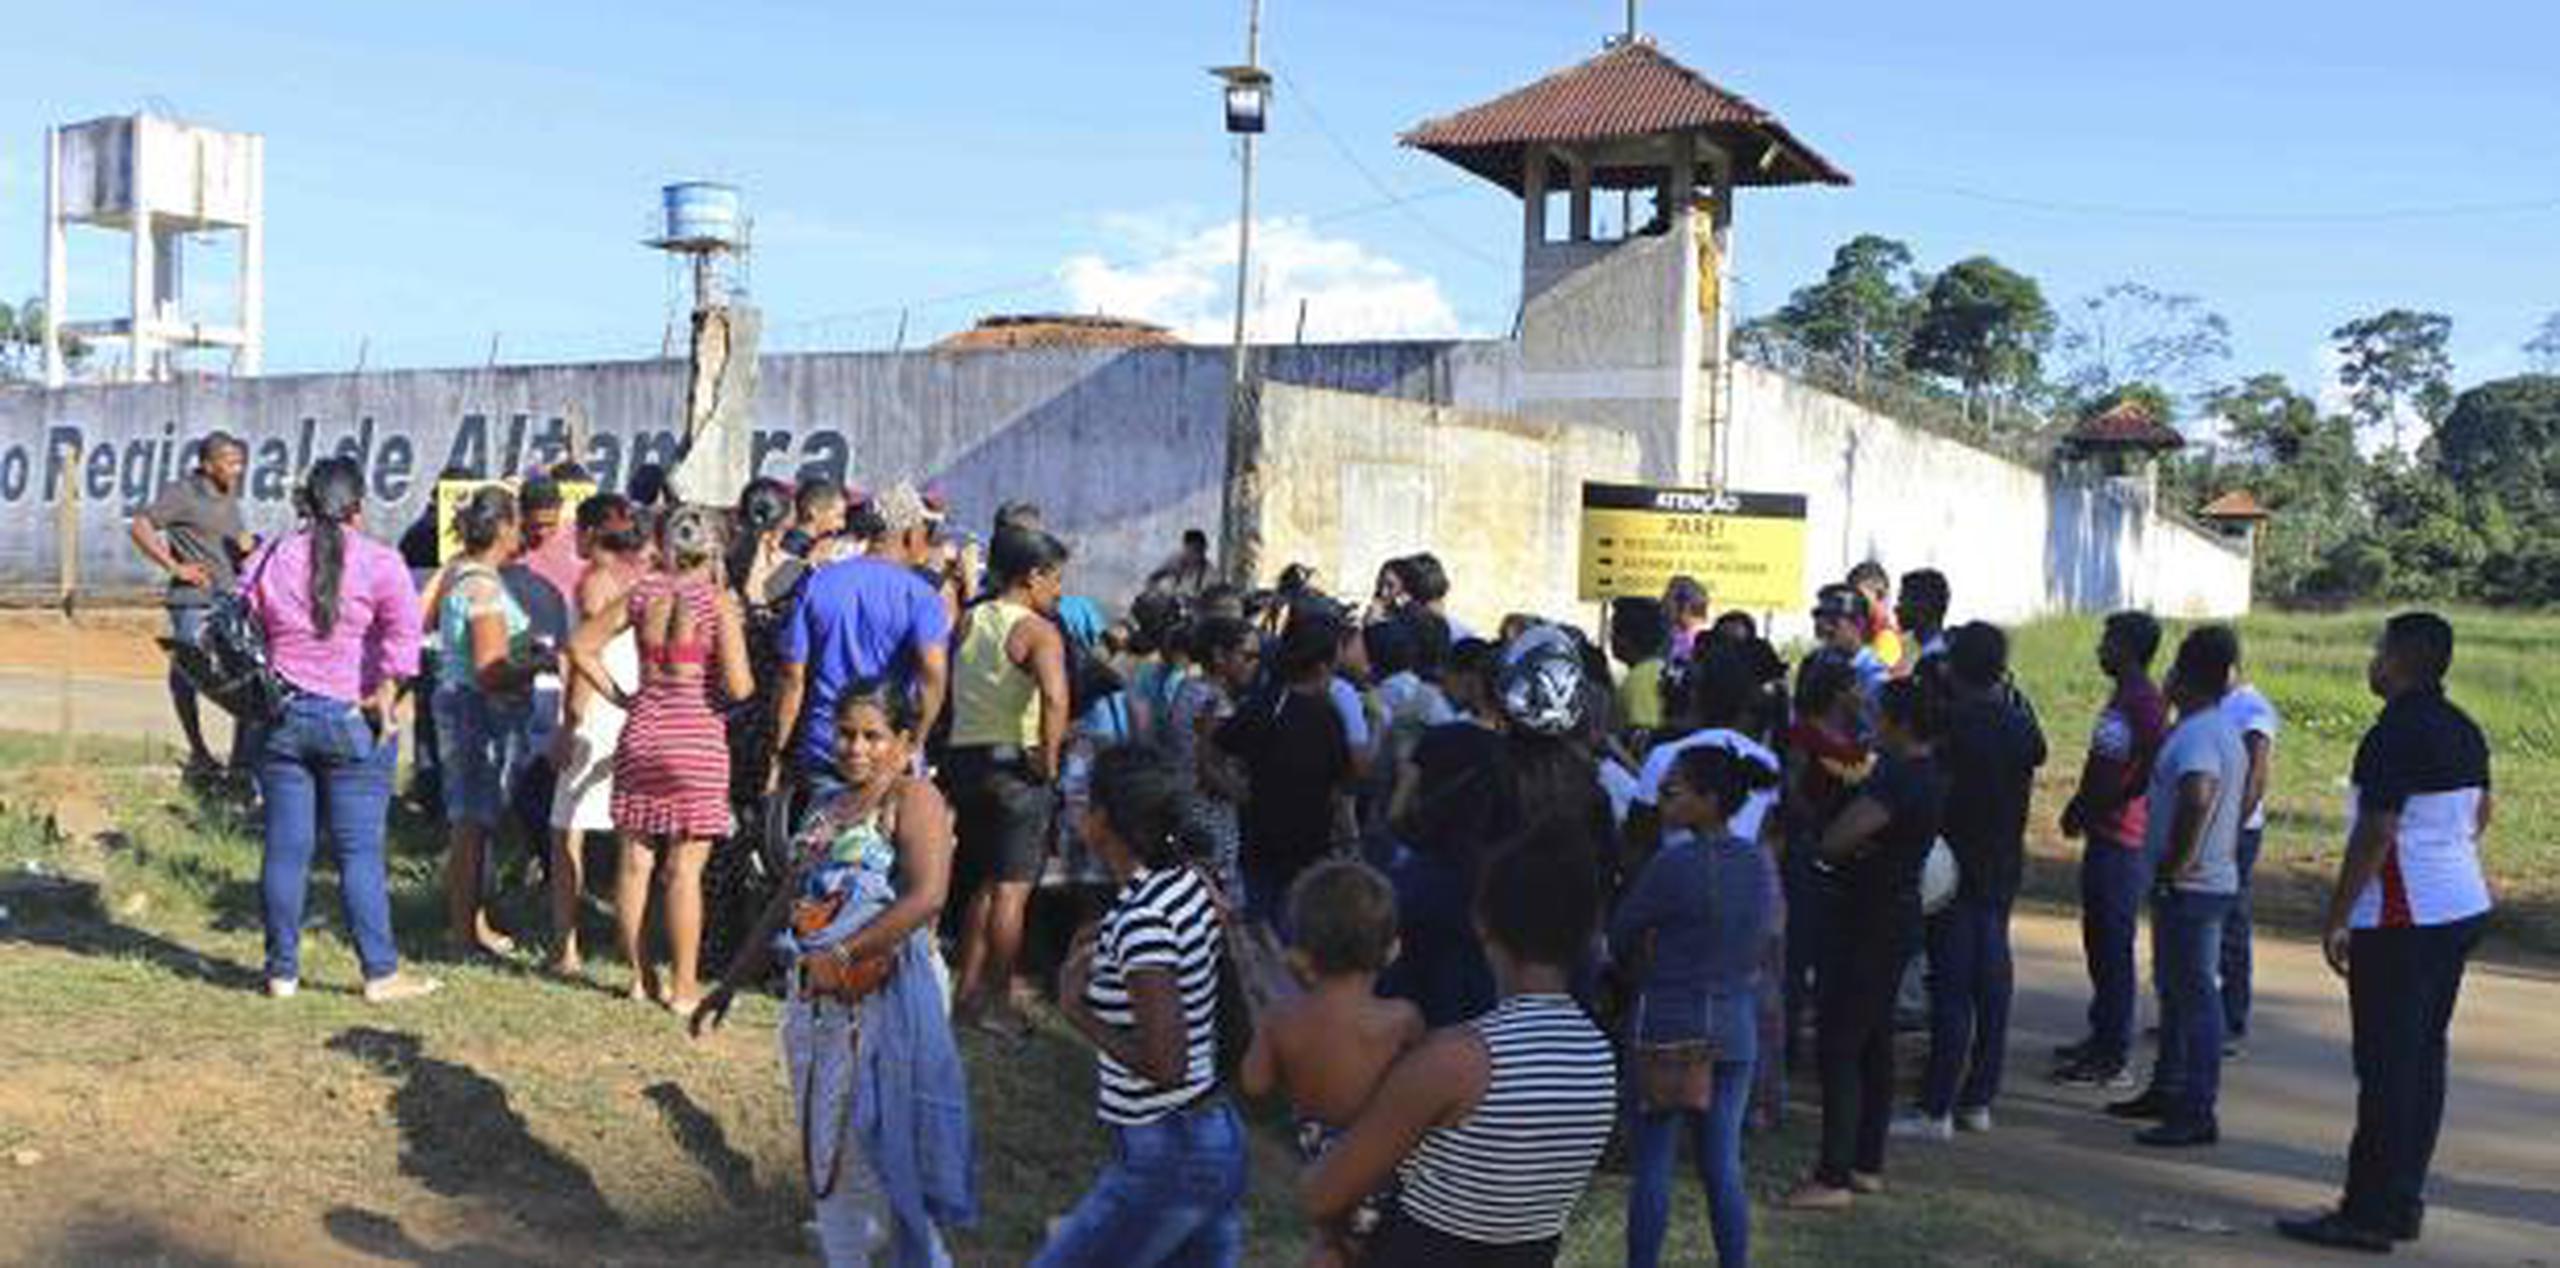 Familiares de algunos de los reclusos habían realizado a finales del pasado mayo protestas y pedidos para que las autoridades transfirieran integrantes de una de las facciones a otras unidades de detención.